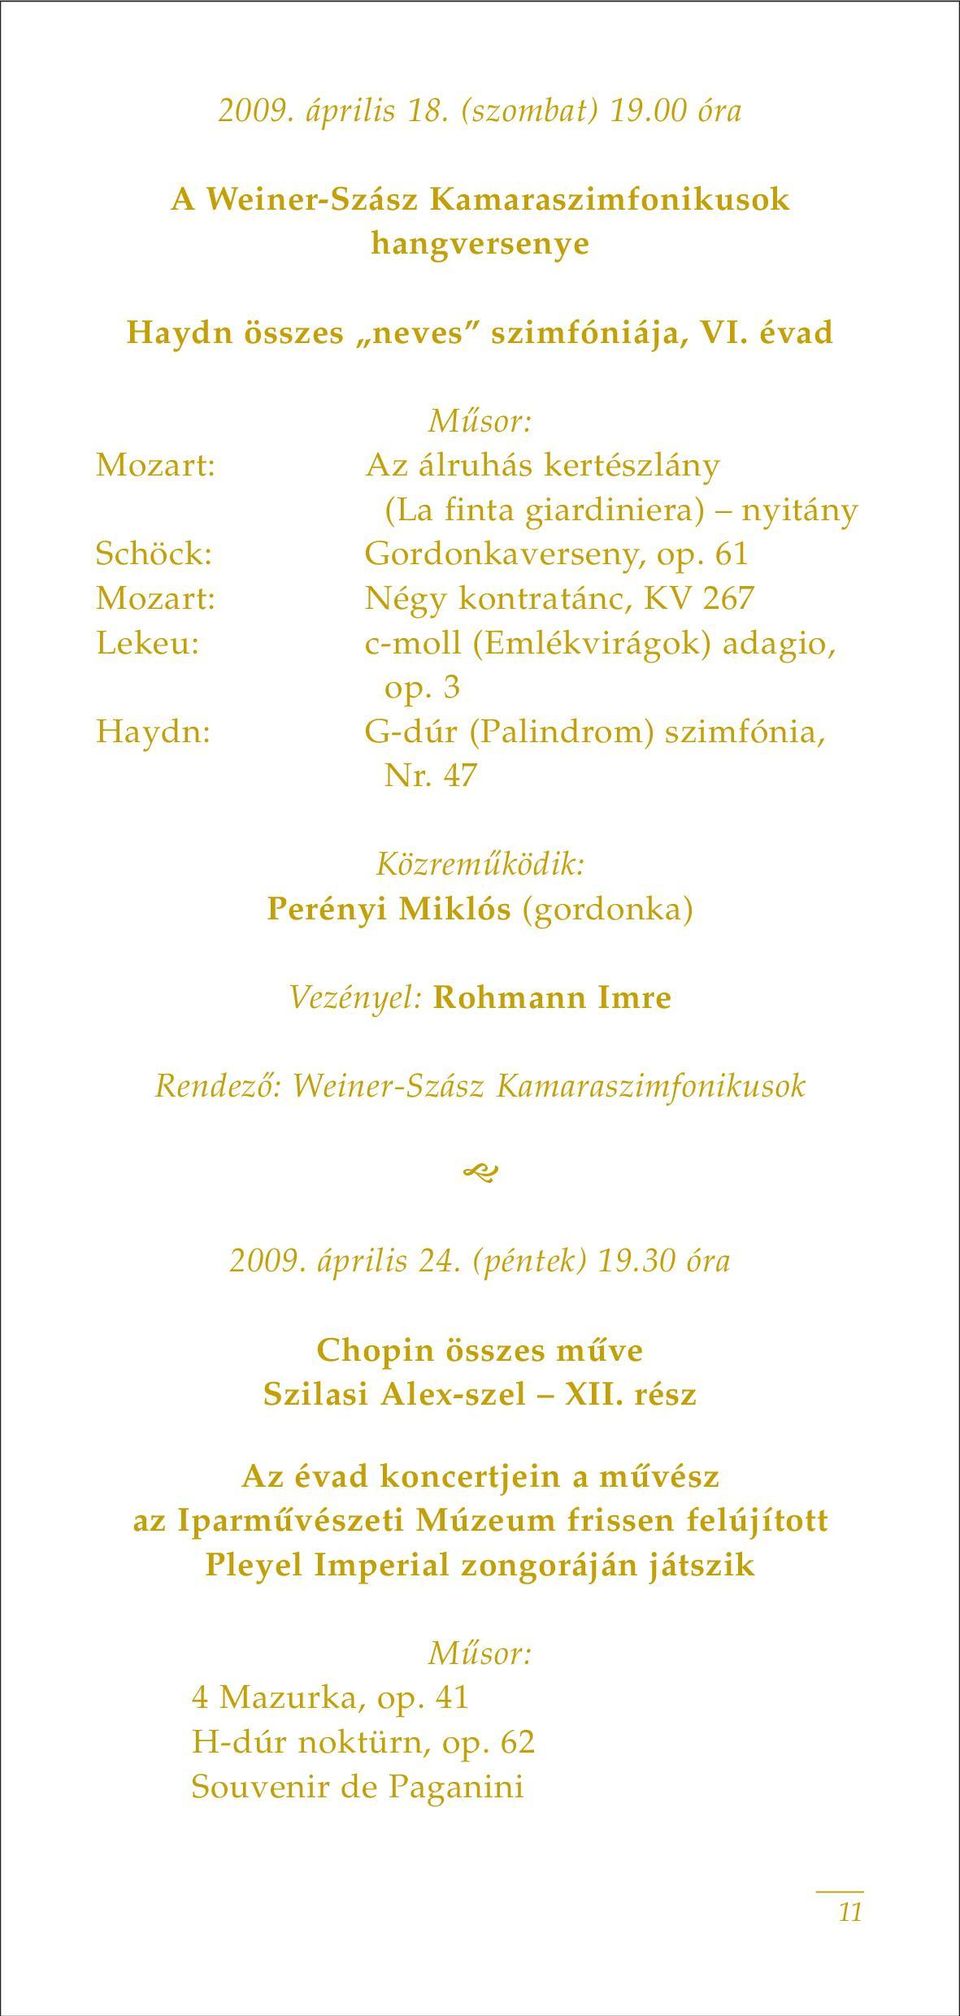 3 Haydn: G-dúr (Palindrom) szimfónia, Nr. 47 Közremûködik: Perényi Miklós (gordonka) Vezényel: Rohmann Imre Rendezô: Weiner-Szász Kamaraszimfonikusok 2009. április 24.